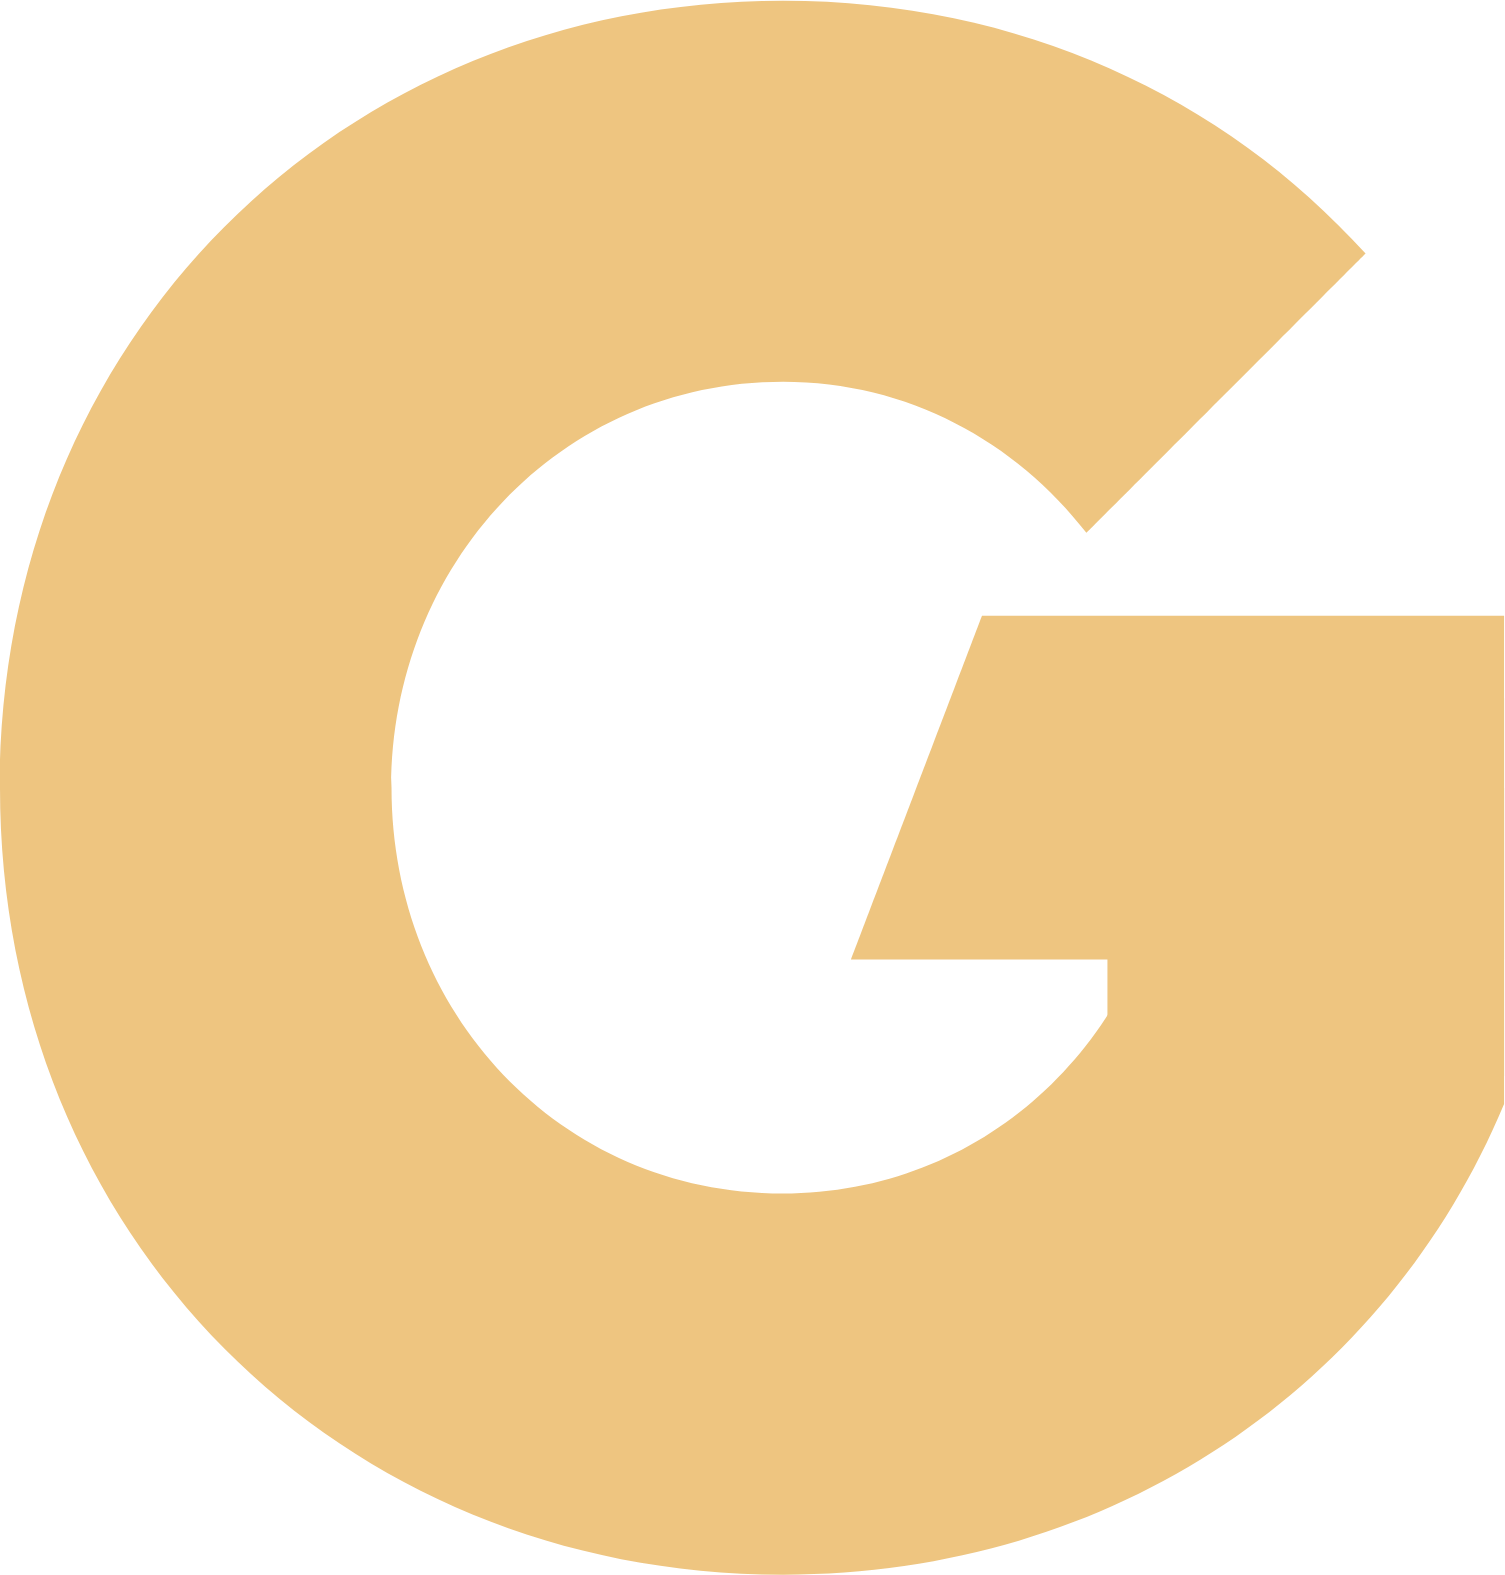 GoldMining Inc. logo for dark backgrounds (transparent PNG)